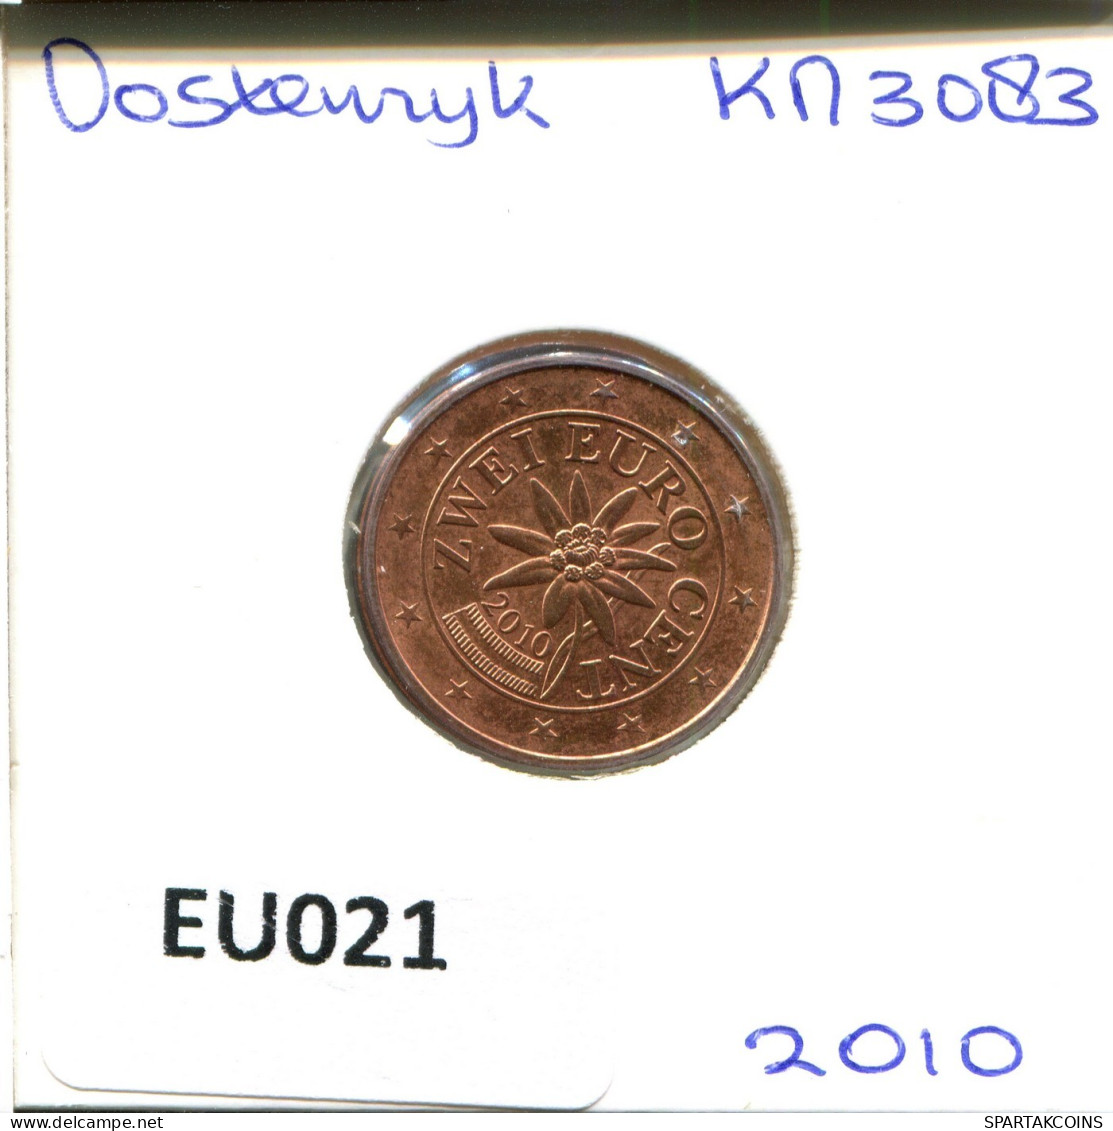 2 EURO CENTS 2010 AUTRICHE AUSTRIA Pièce #EU021.F.A - Austria